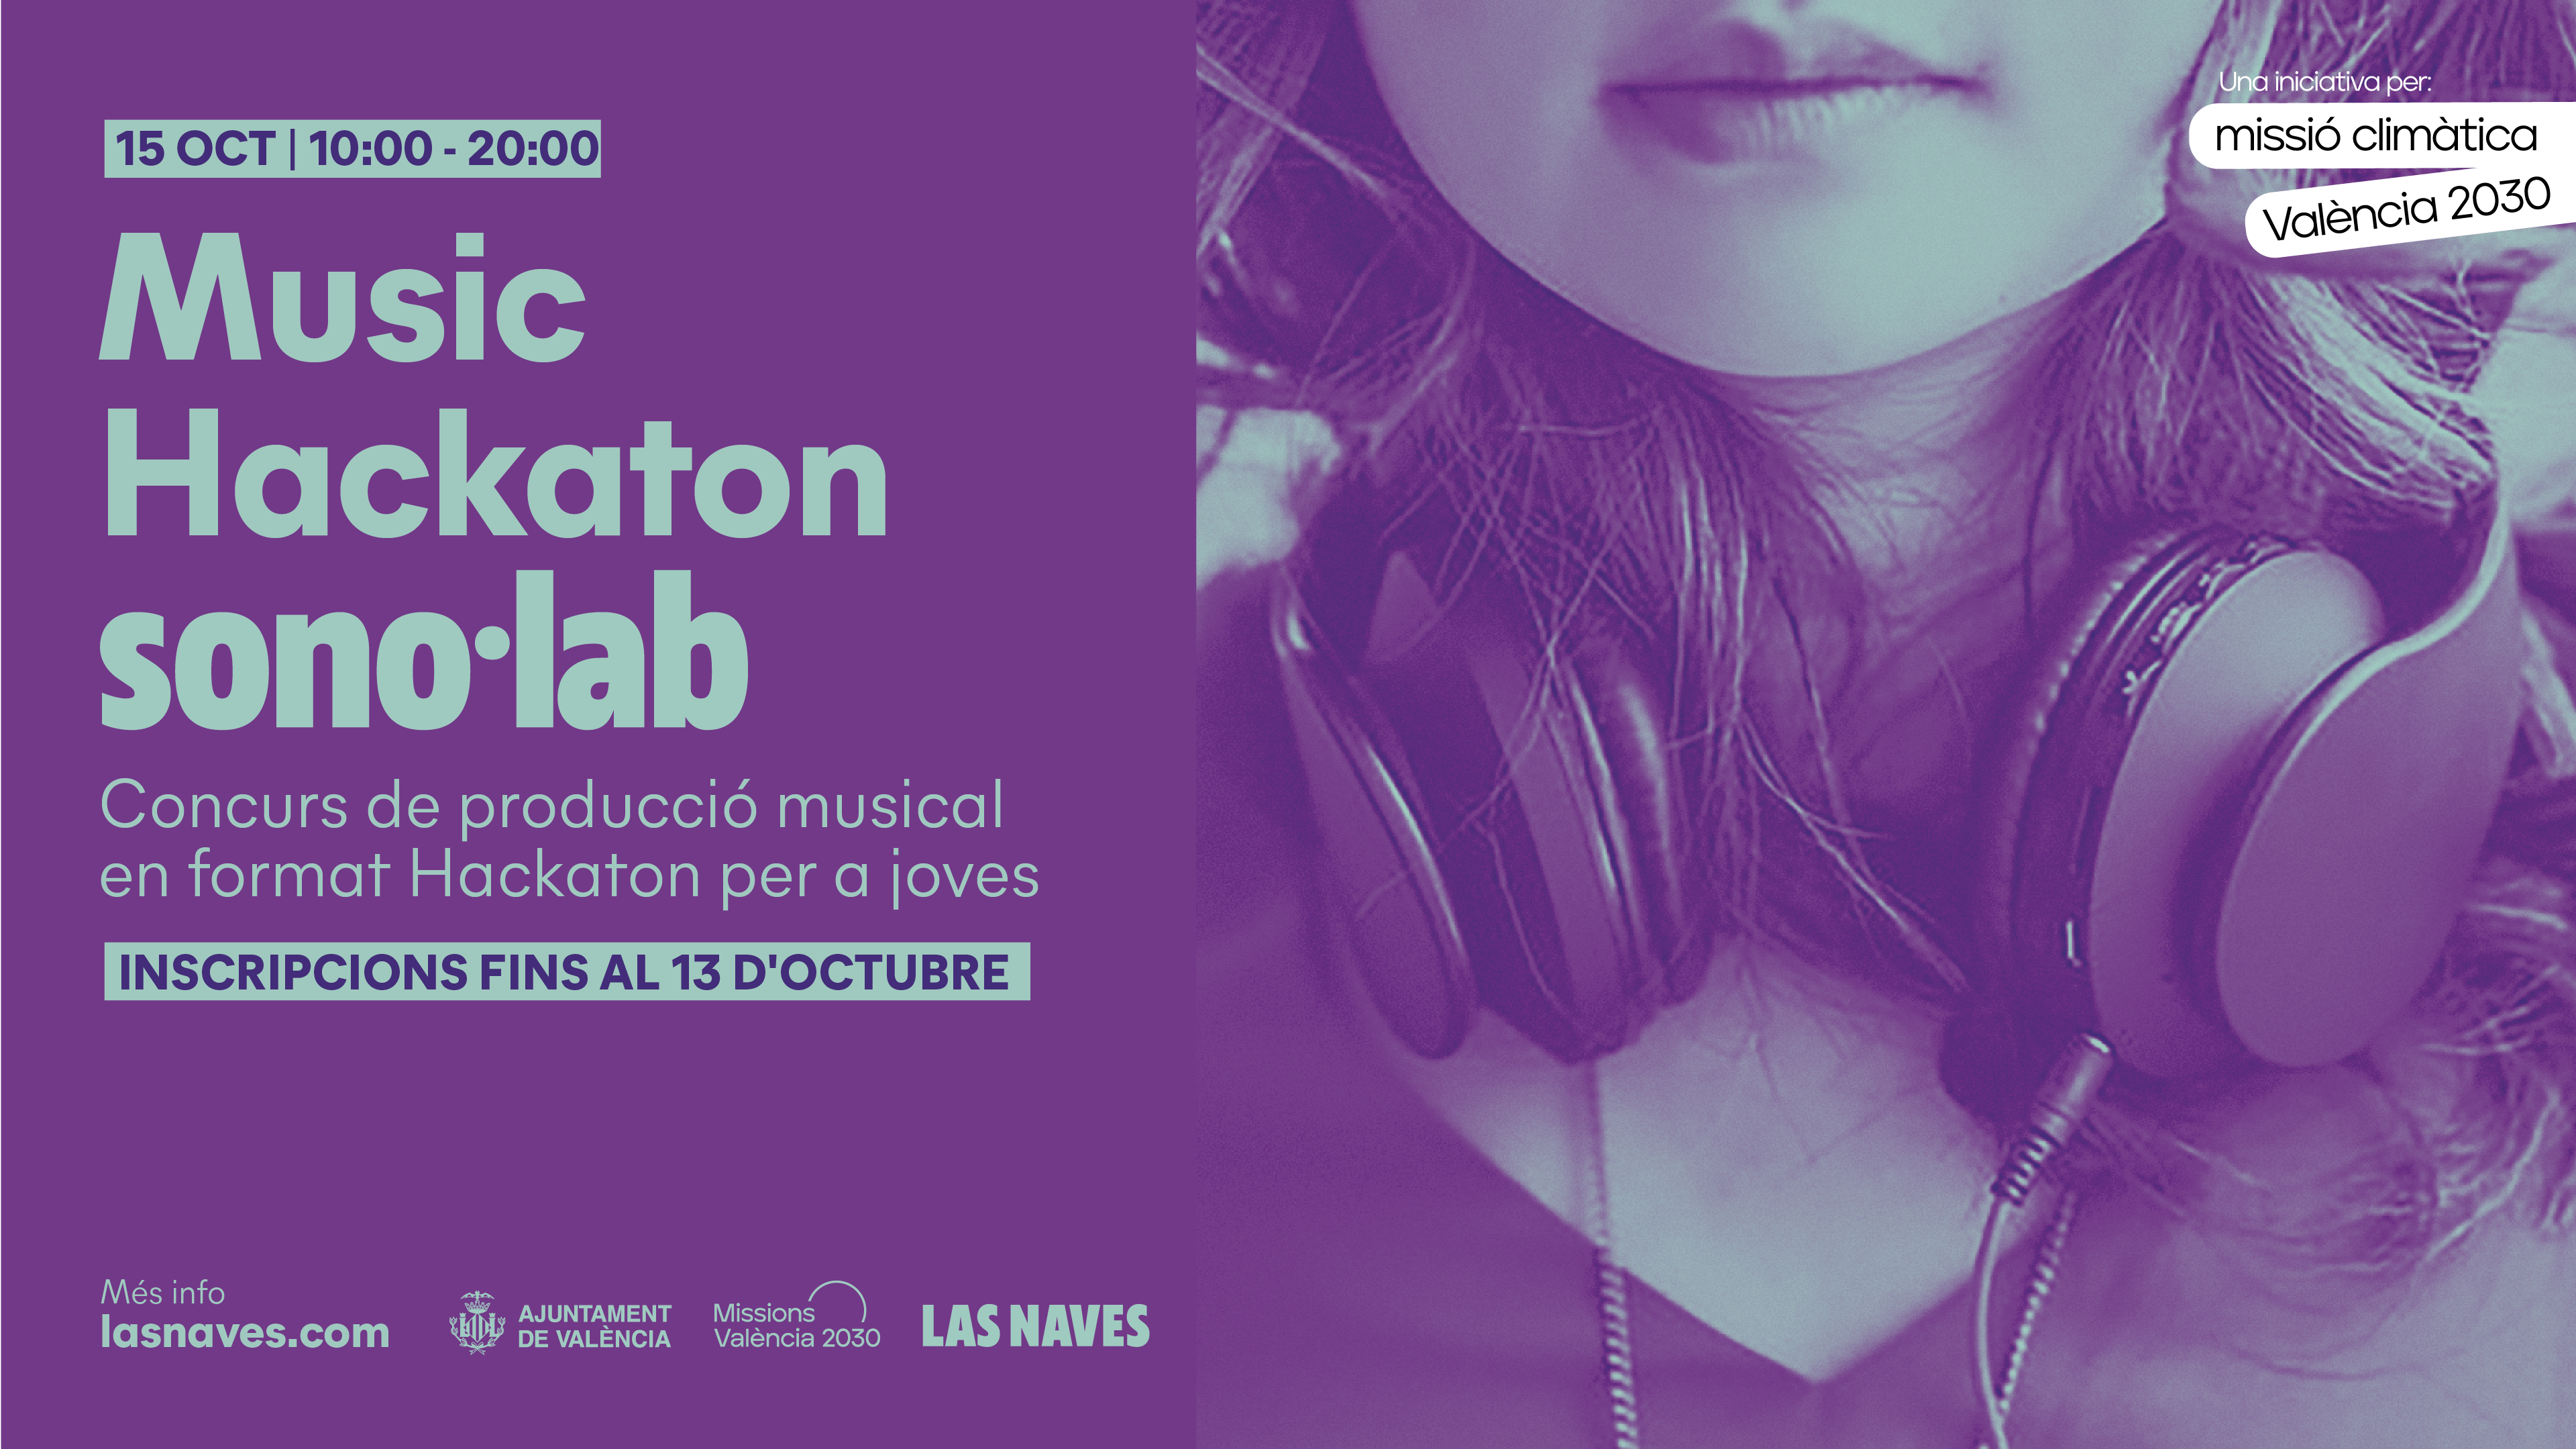 Cartel anunciador del concurso de producción musical Music Hackaton de sonol·lab